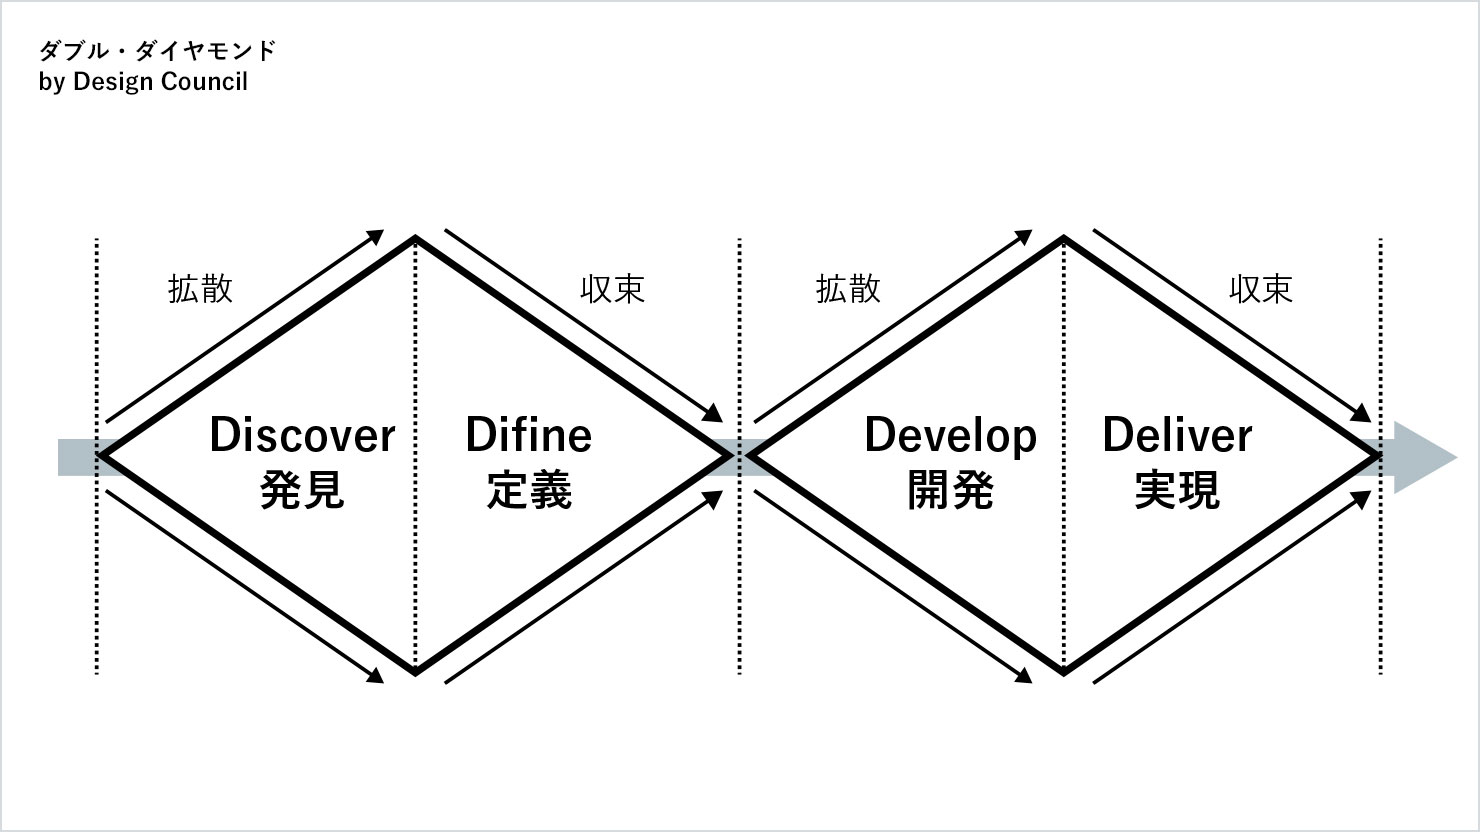 ダブルダイヤモンド by Design Counsilの図。ダブルダイヤモンドとは、アイデアの発散と収束を繰り返しながら4つのフェーズ（発見・定義・展開・実現）を経て、サービスの価値を磨いていくサービスデザインのプロセスを図で表したもののこと。